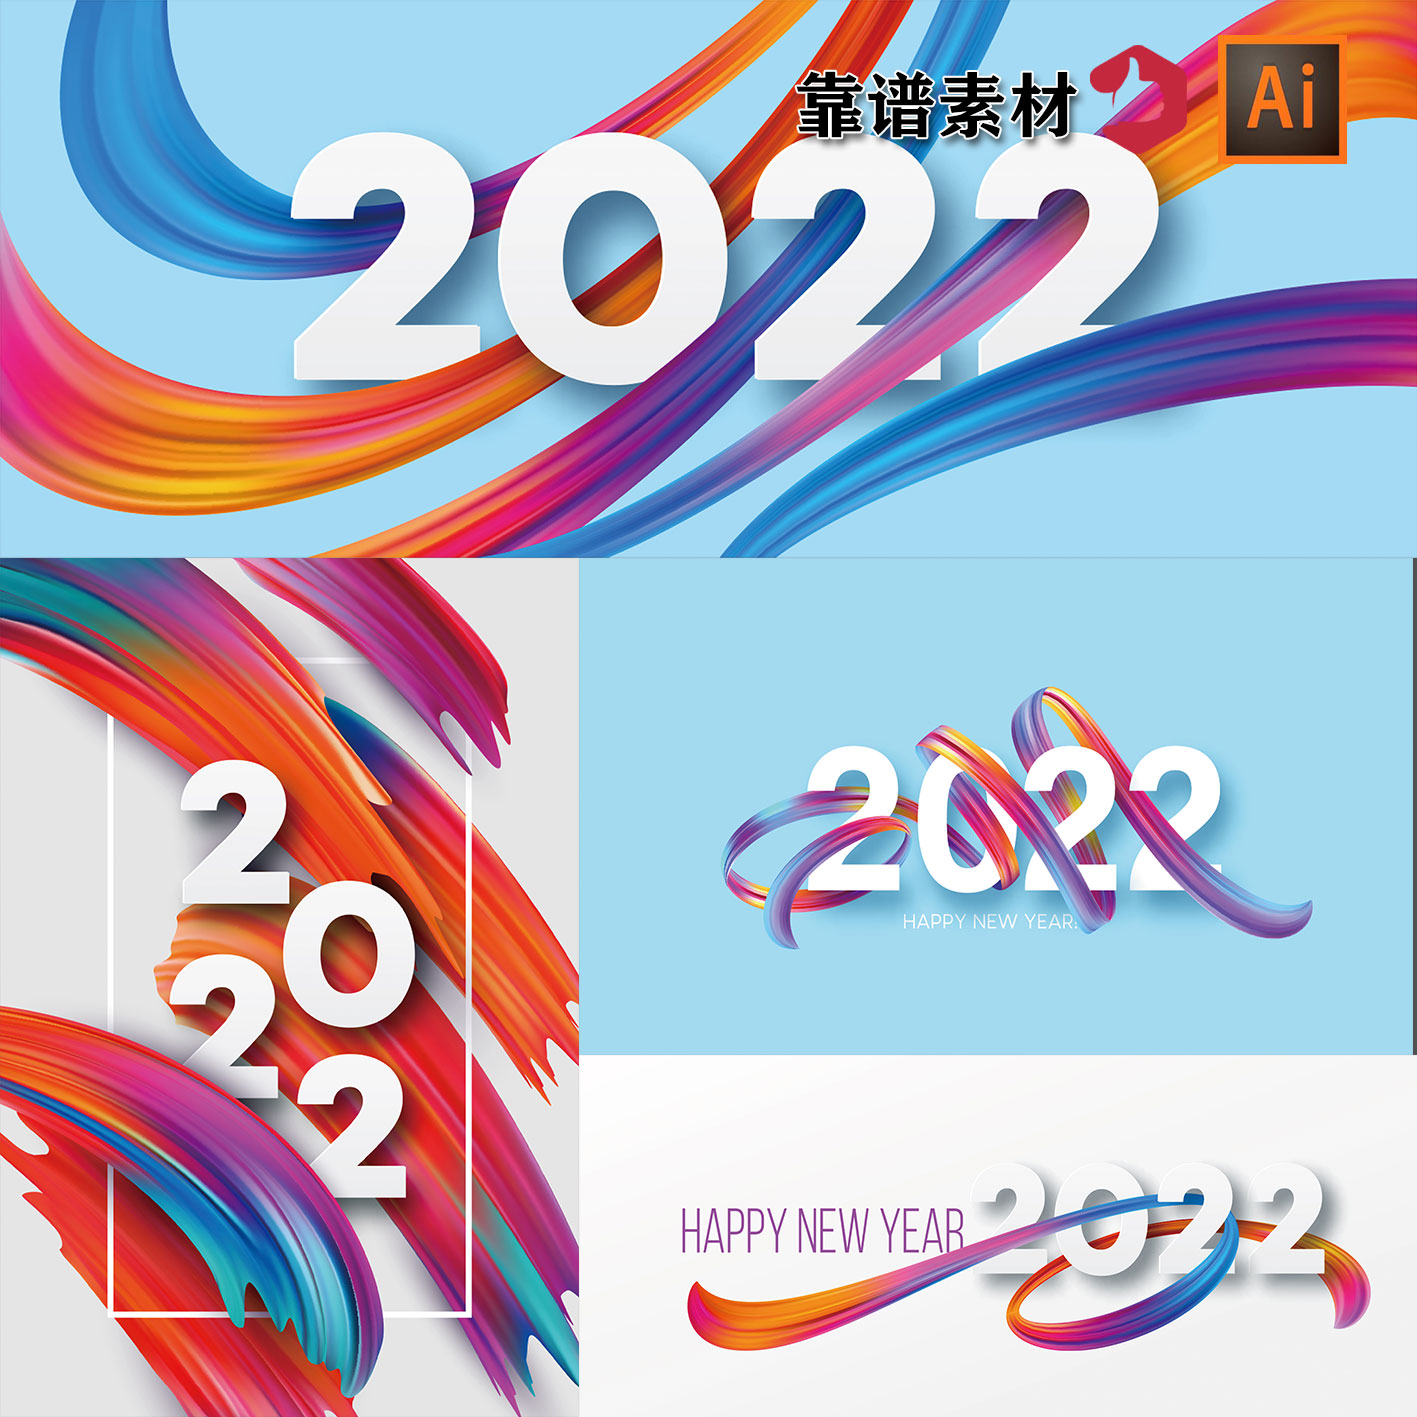 创意抽象彩色飘带2022字体设计创意海报背景AI矢量素材